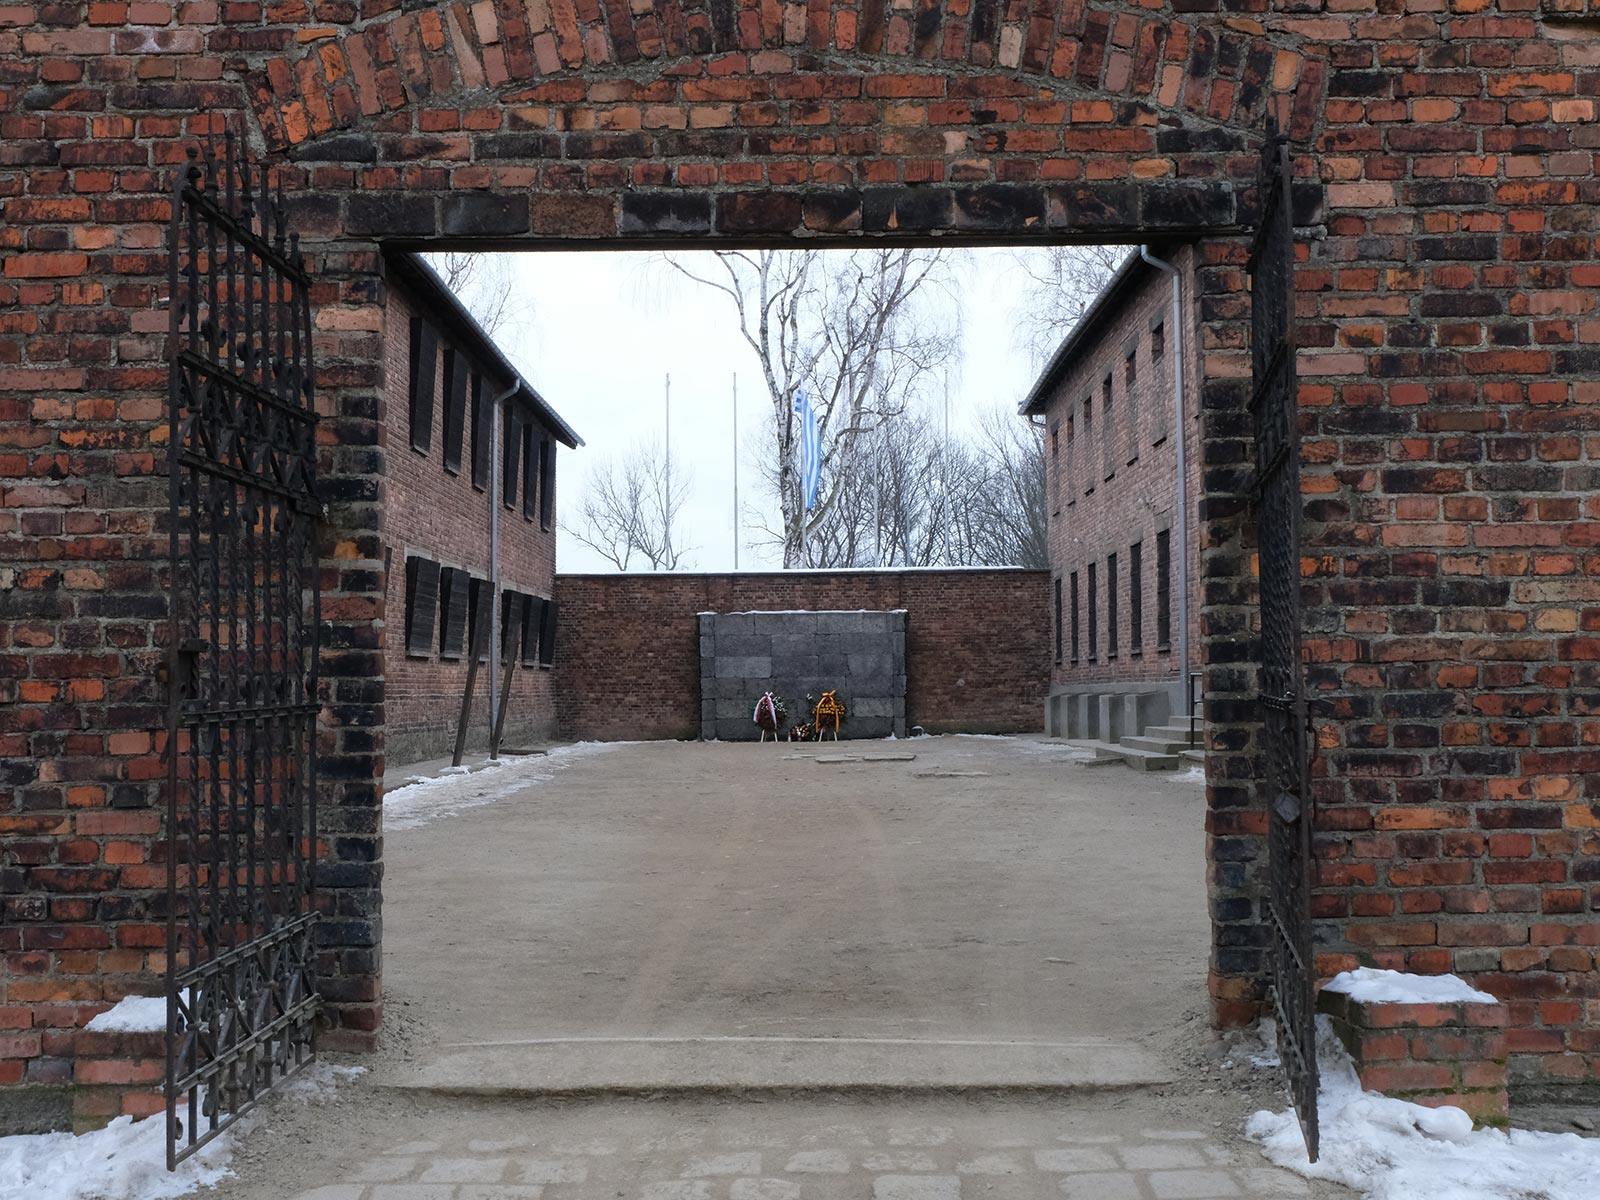 Gas chambers building in Auschwitz, Oświęcim, Poland. Mixed feelings in Auschwitz